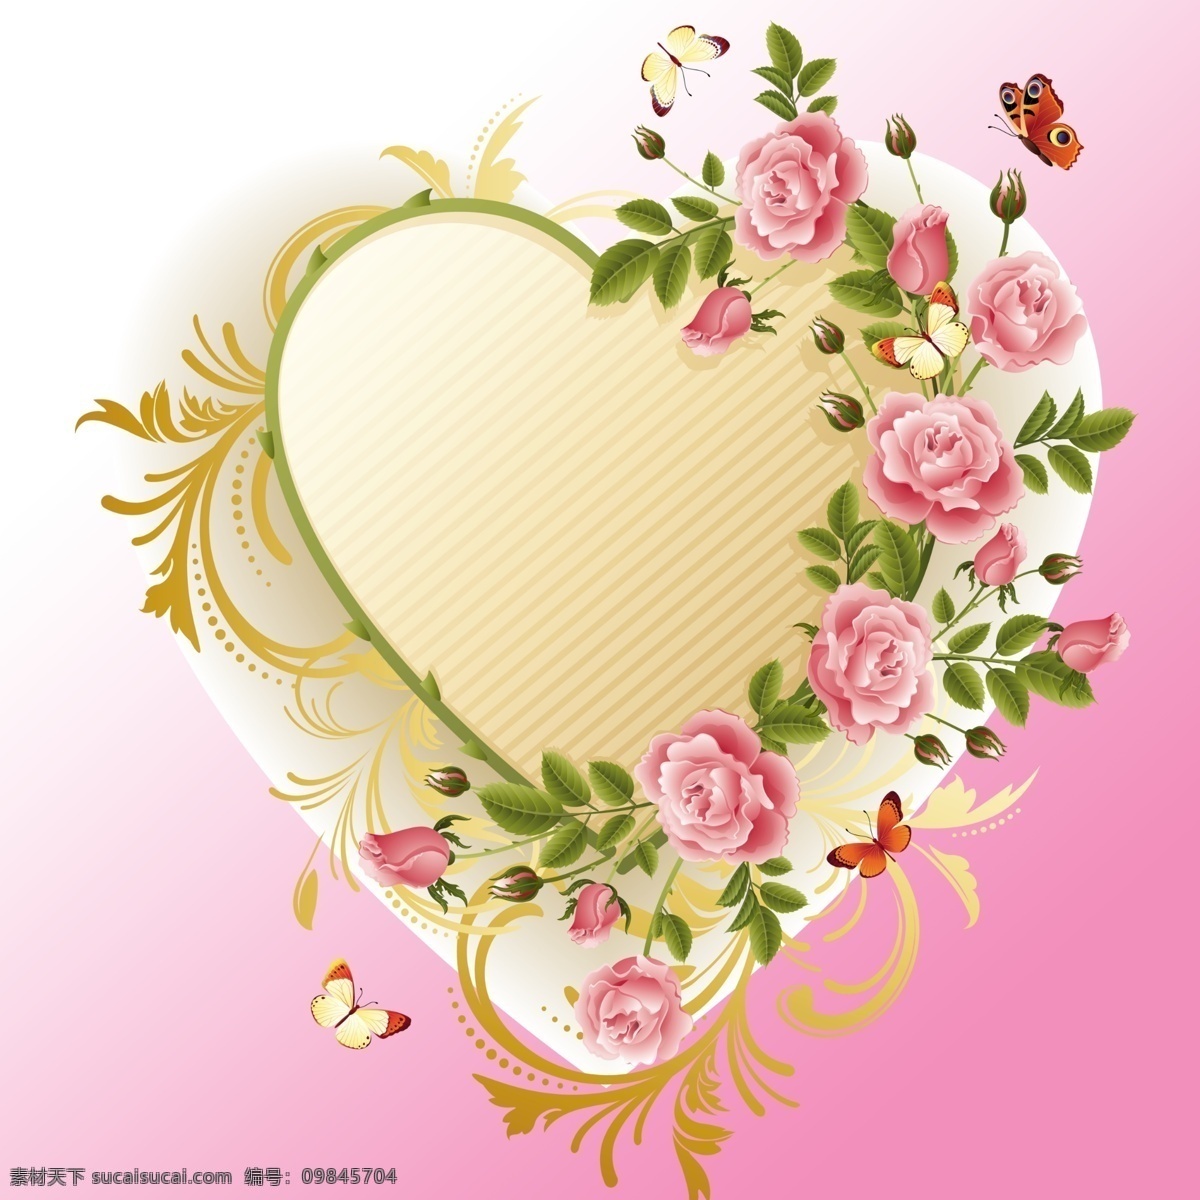 玫瑰 心形 装饰 边框 玫瑰花 蝴蝶玫瑰 边框心形 粉色渐变 浪漫花纹